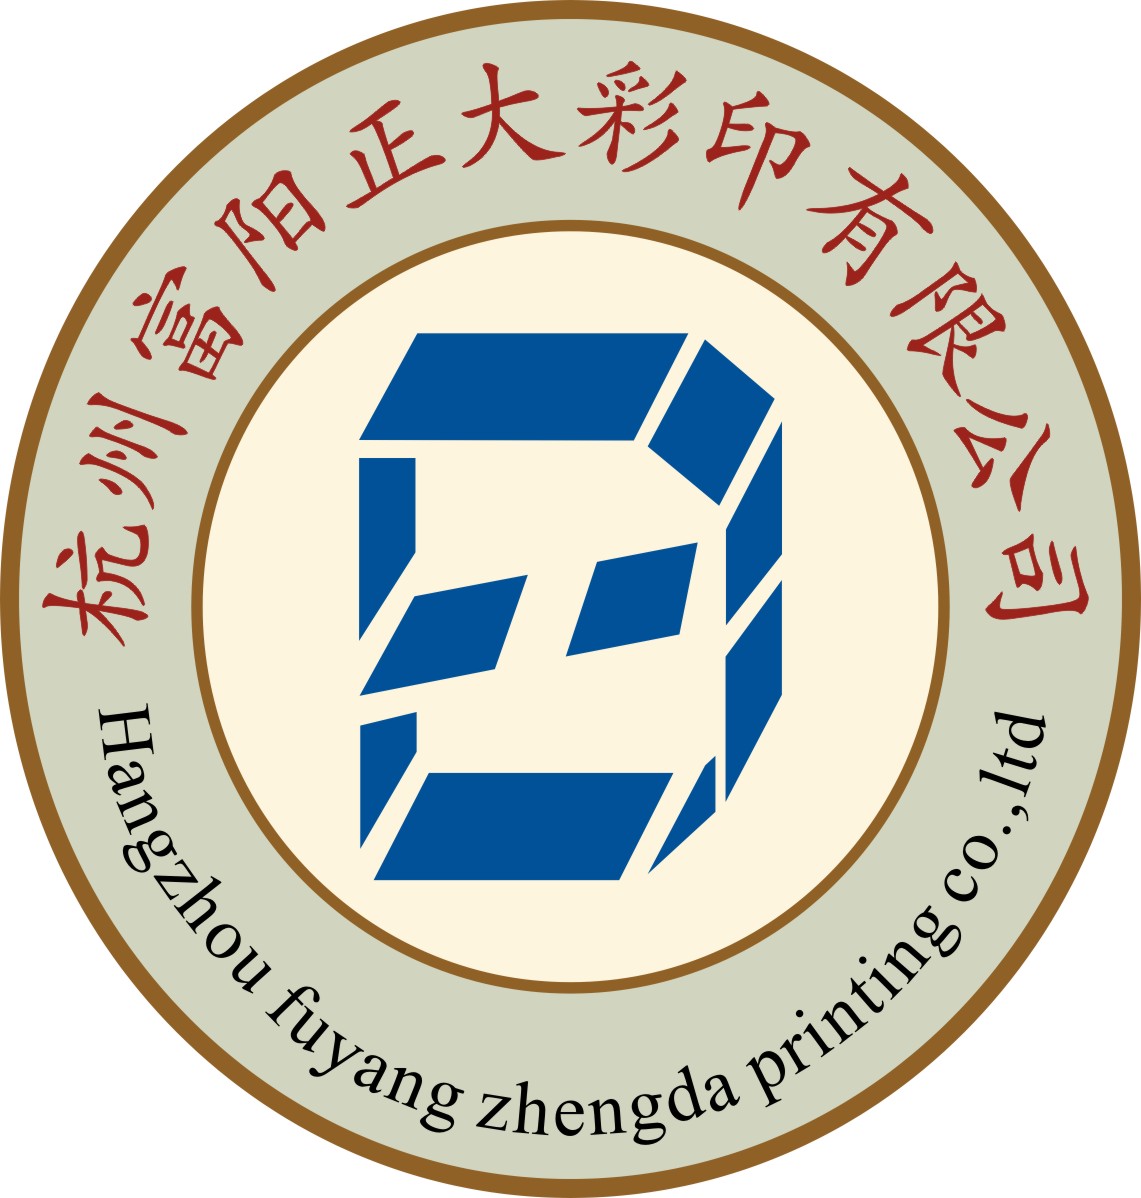 杭州富阳正大彩印有限公司的企业标志